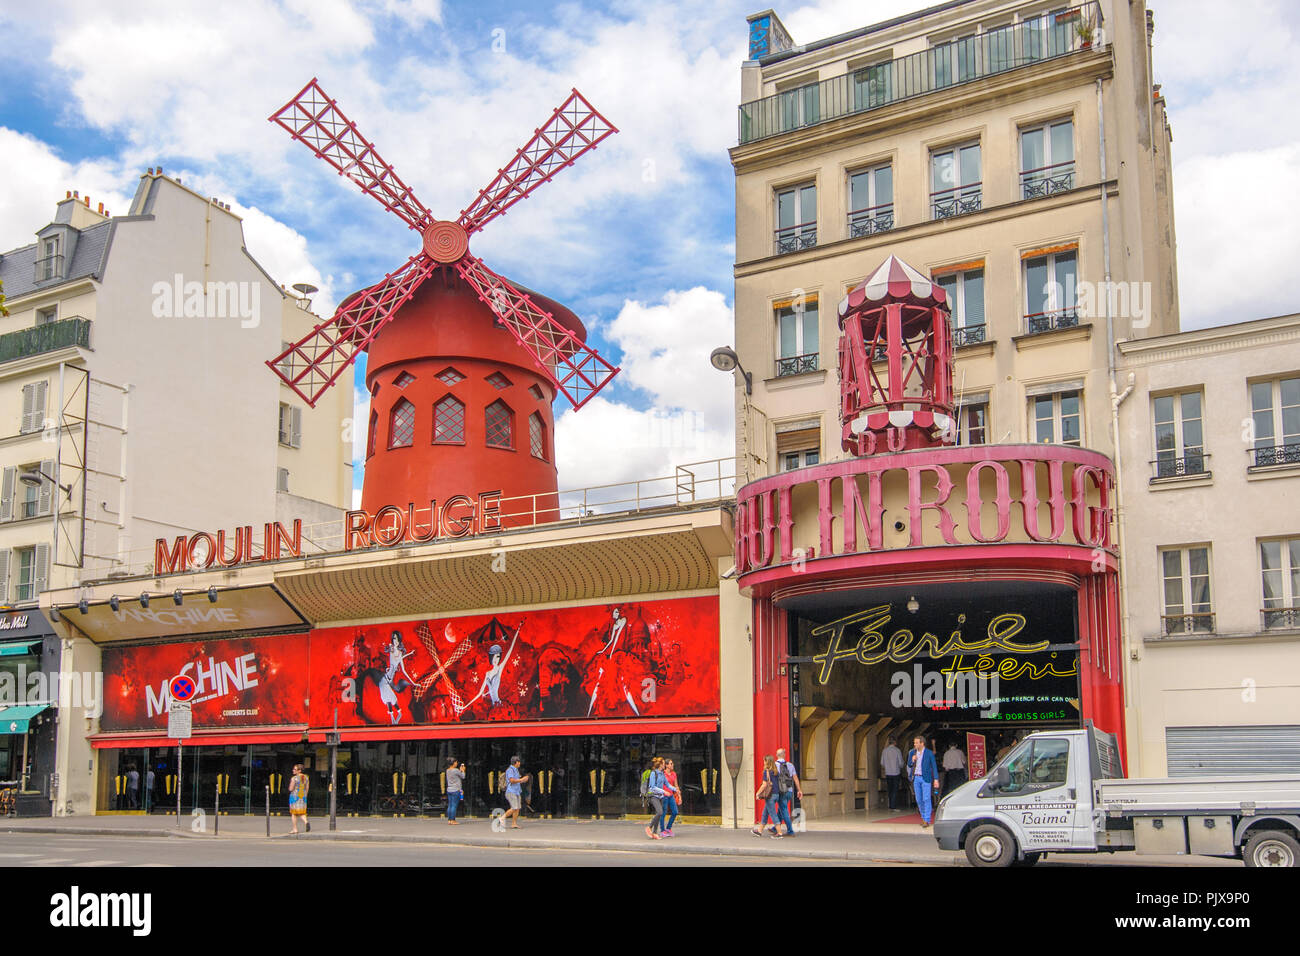 Parigi, Francia - 12 Giugno 2015: Moulin Rouge, un cabaret a Parigi, segnato dal mulino rosso sul tetto. Foto Stock